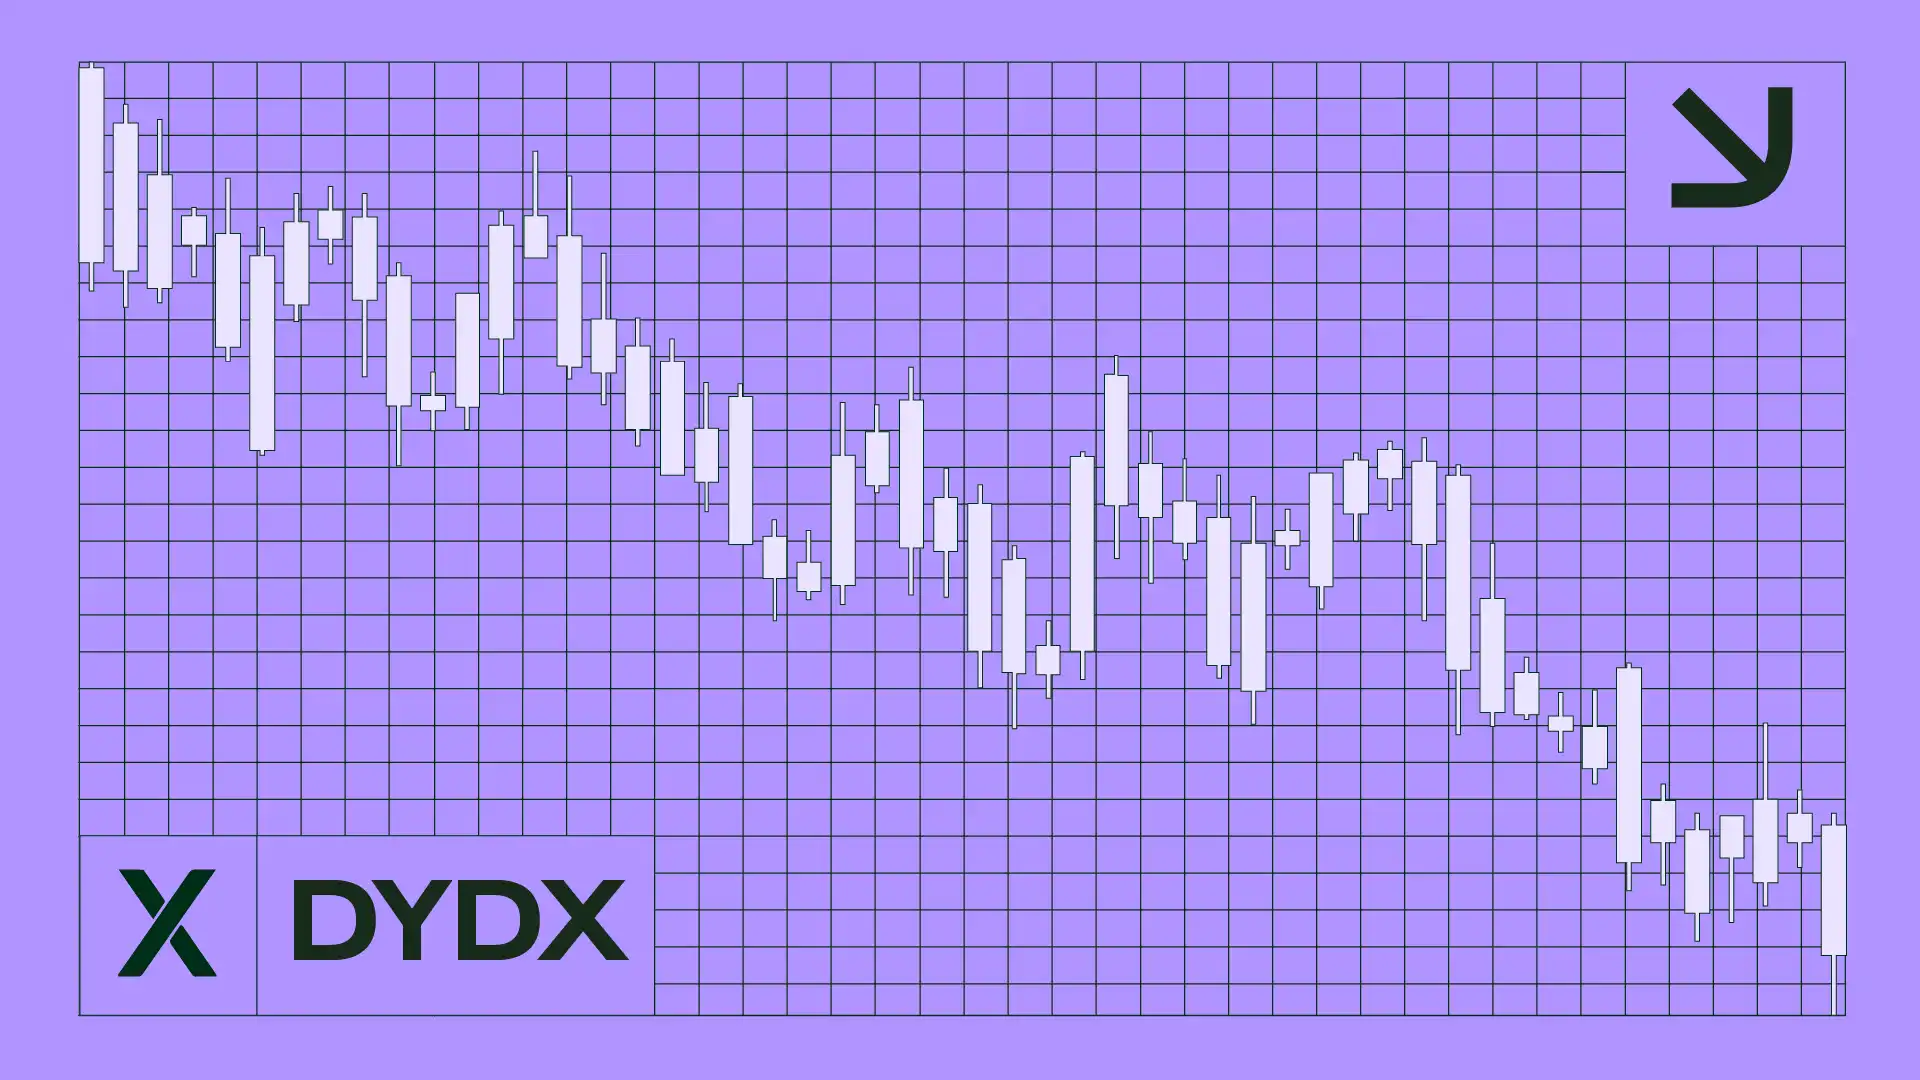 dYdX 순환 공급 급증, 인플레이션 우려 증폭